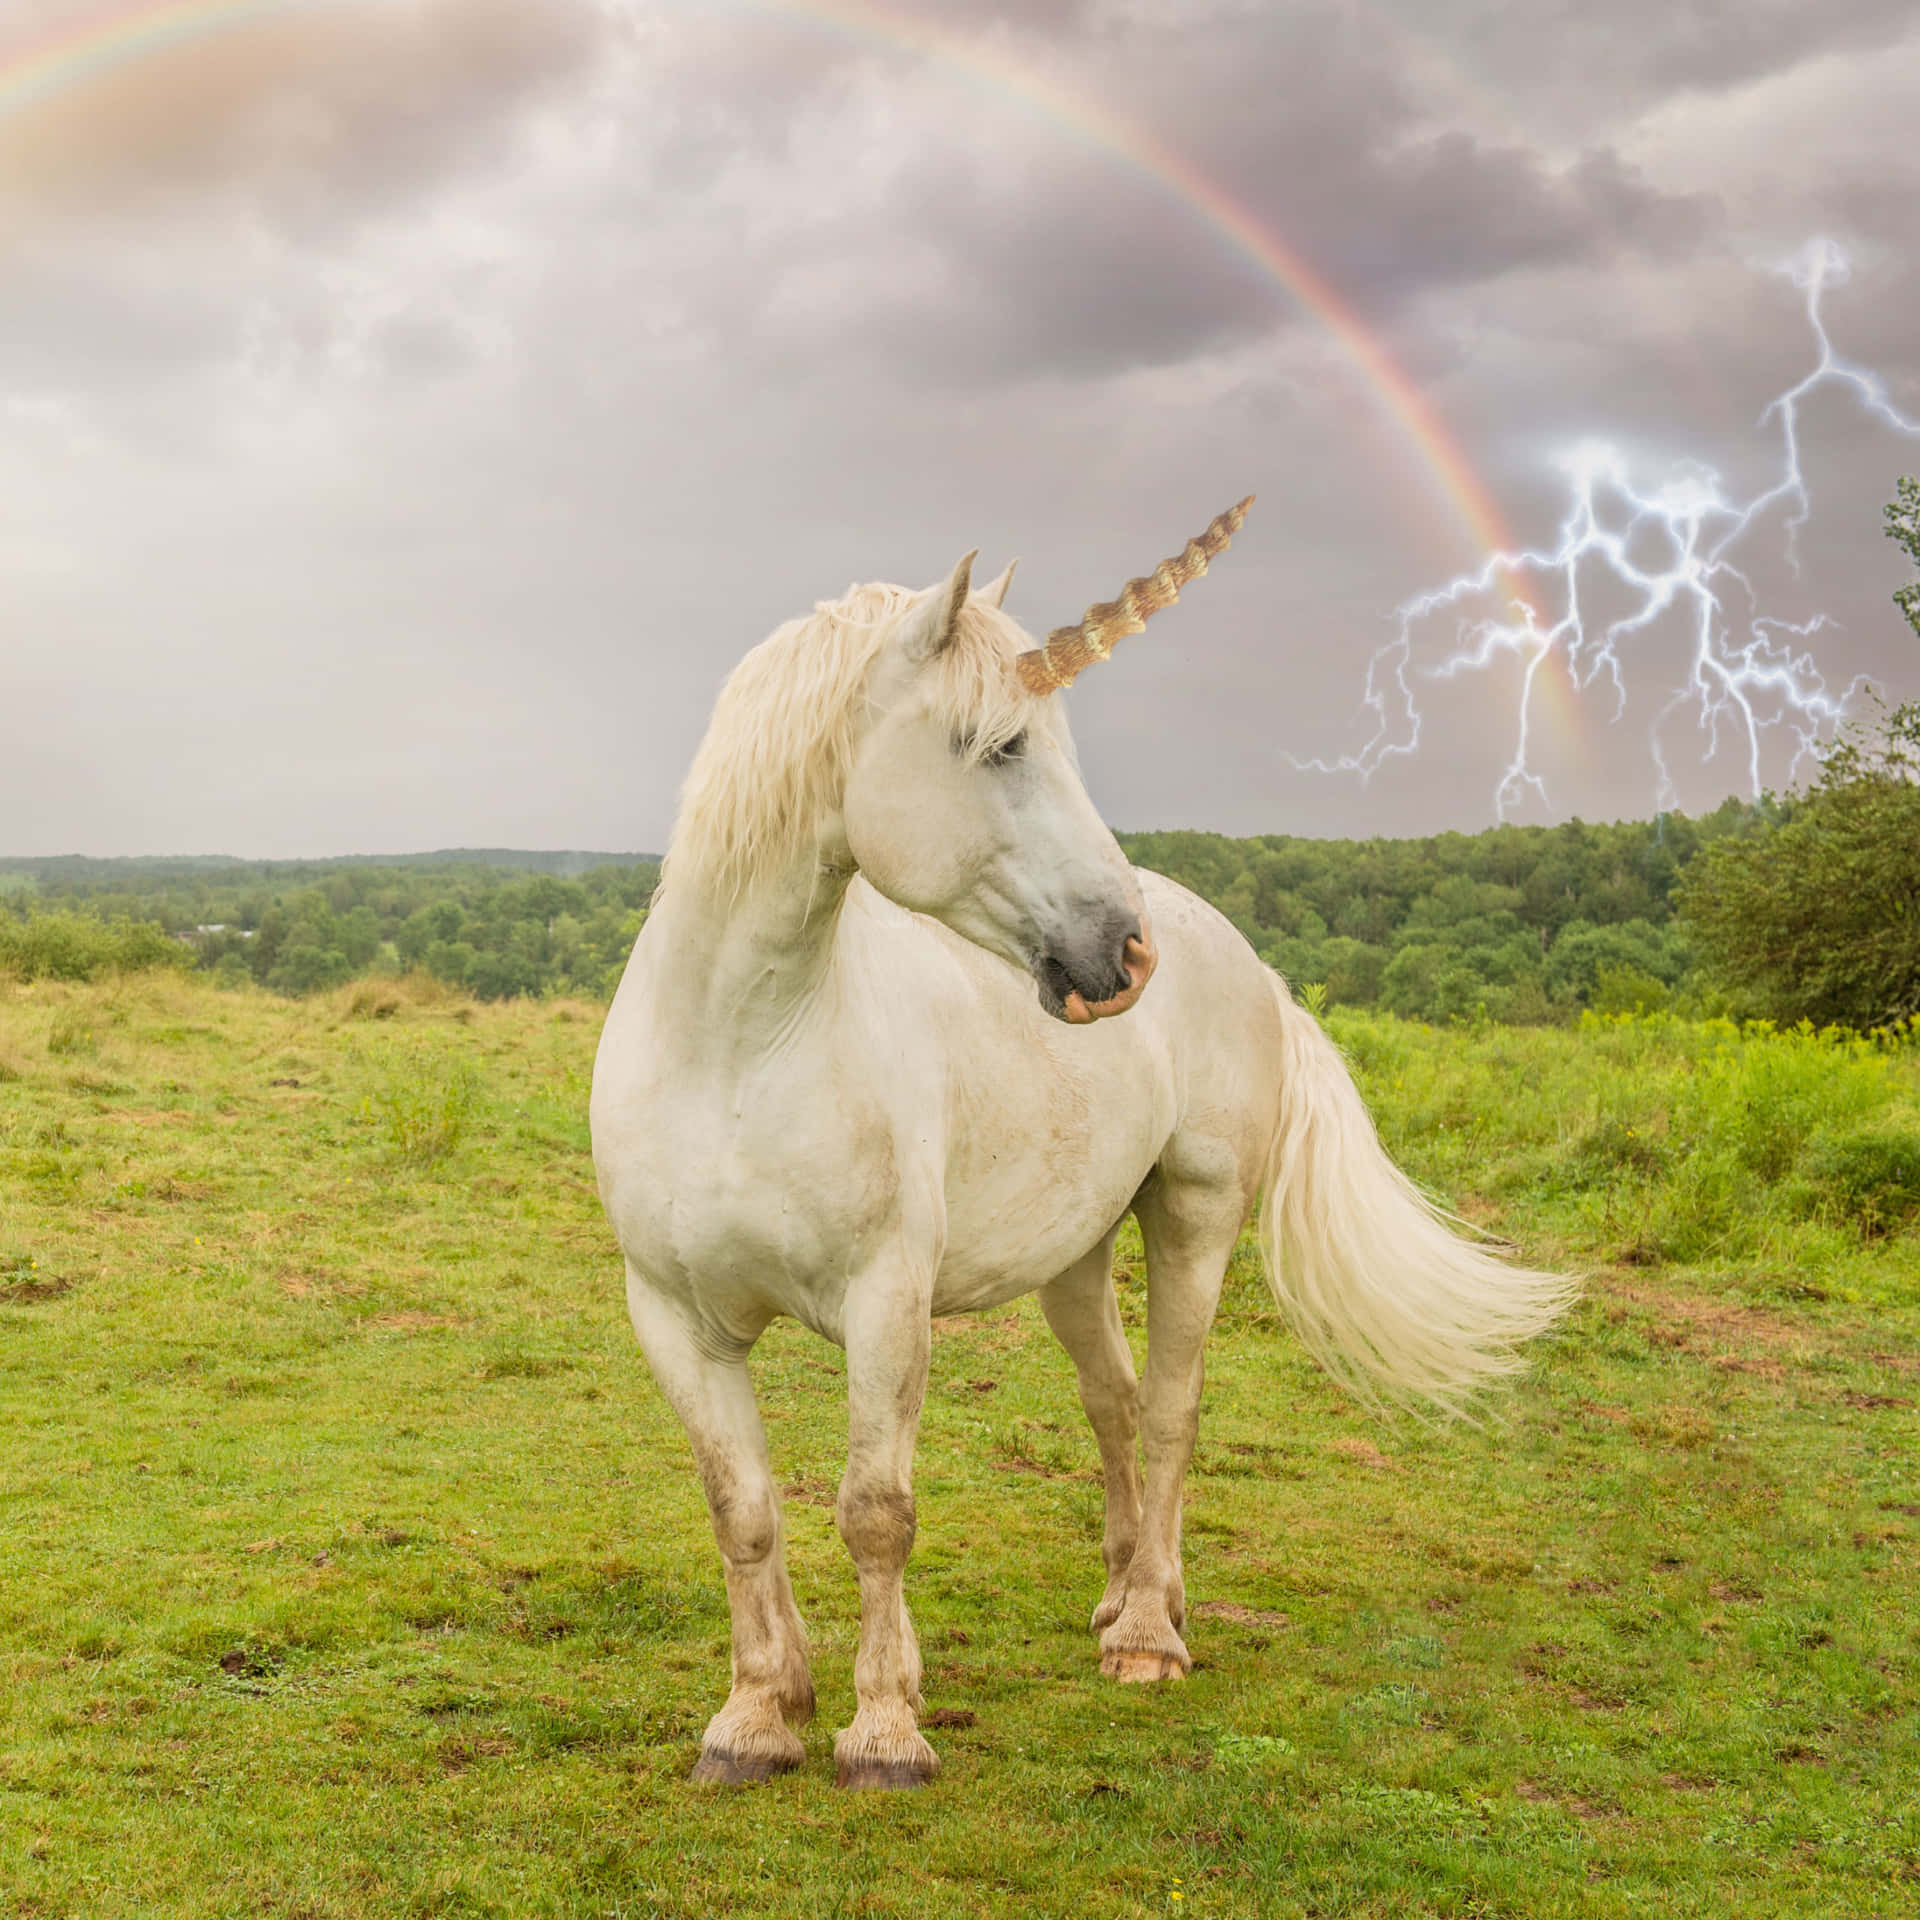 Unicorne står under et regnbue og et storm billede.